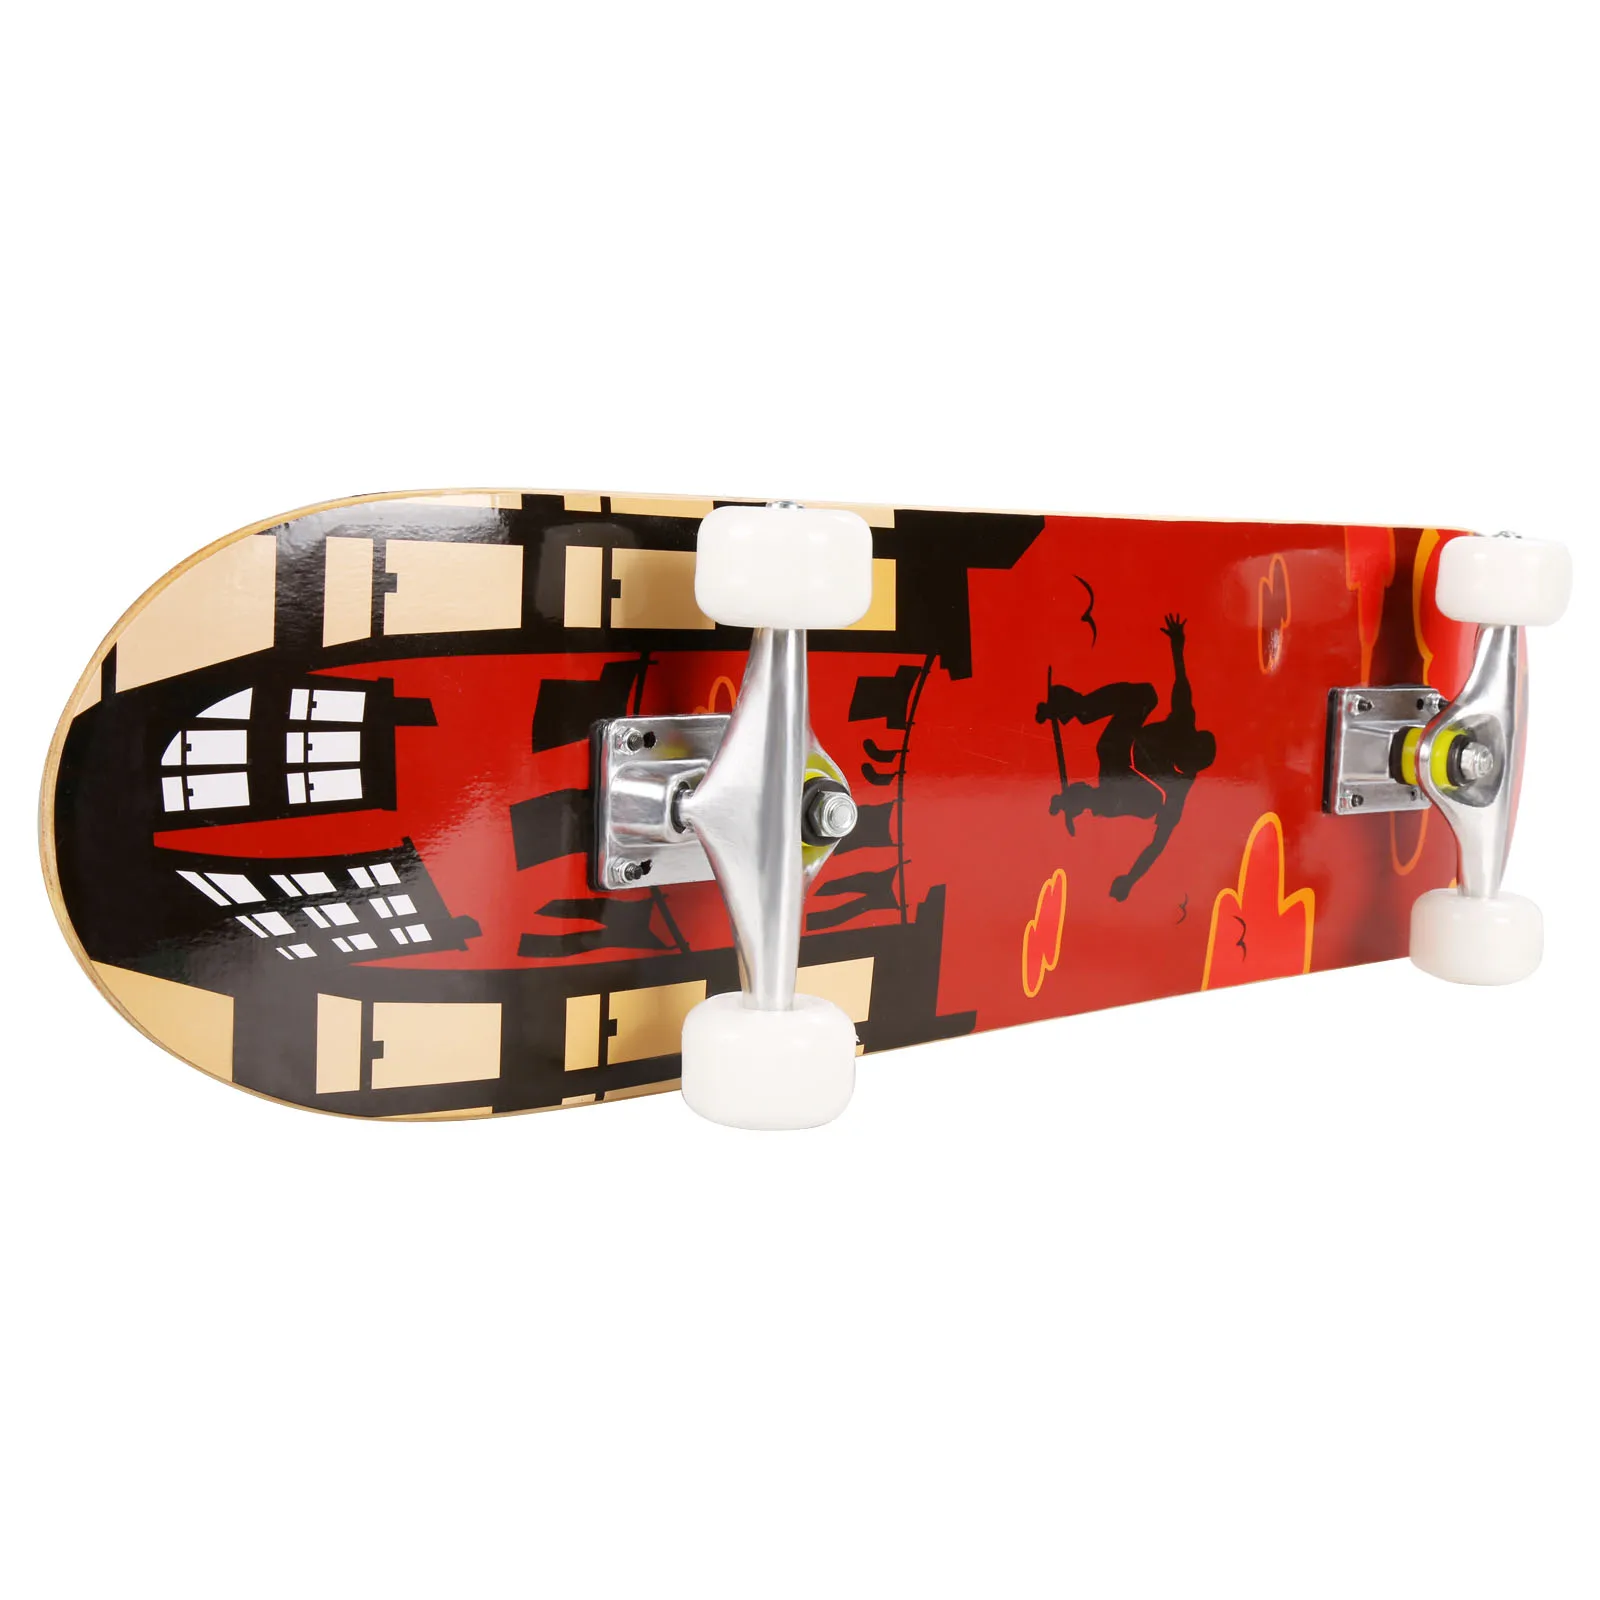 4 колеса взрослый трюк скутер скейтборд печать деревянная доска Скутер скейт доска открытый Экстремальные виды спорта длинная доска Ховерборд - Цвет: Red pose